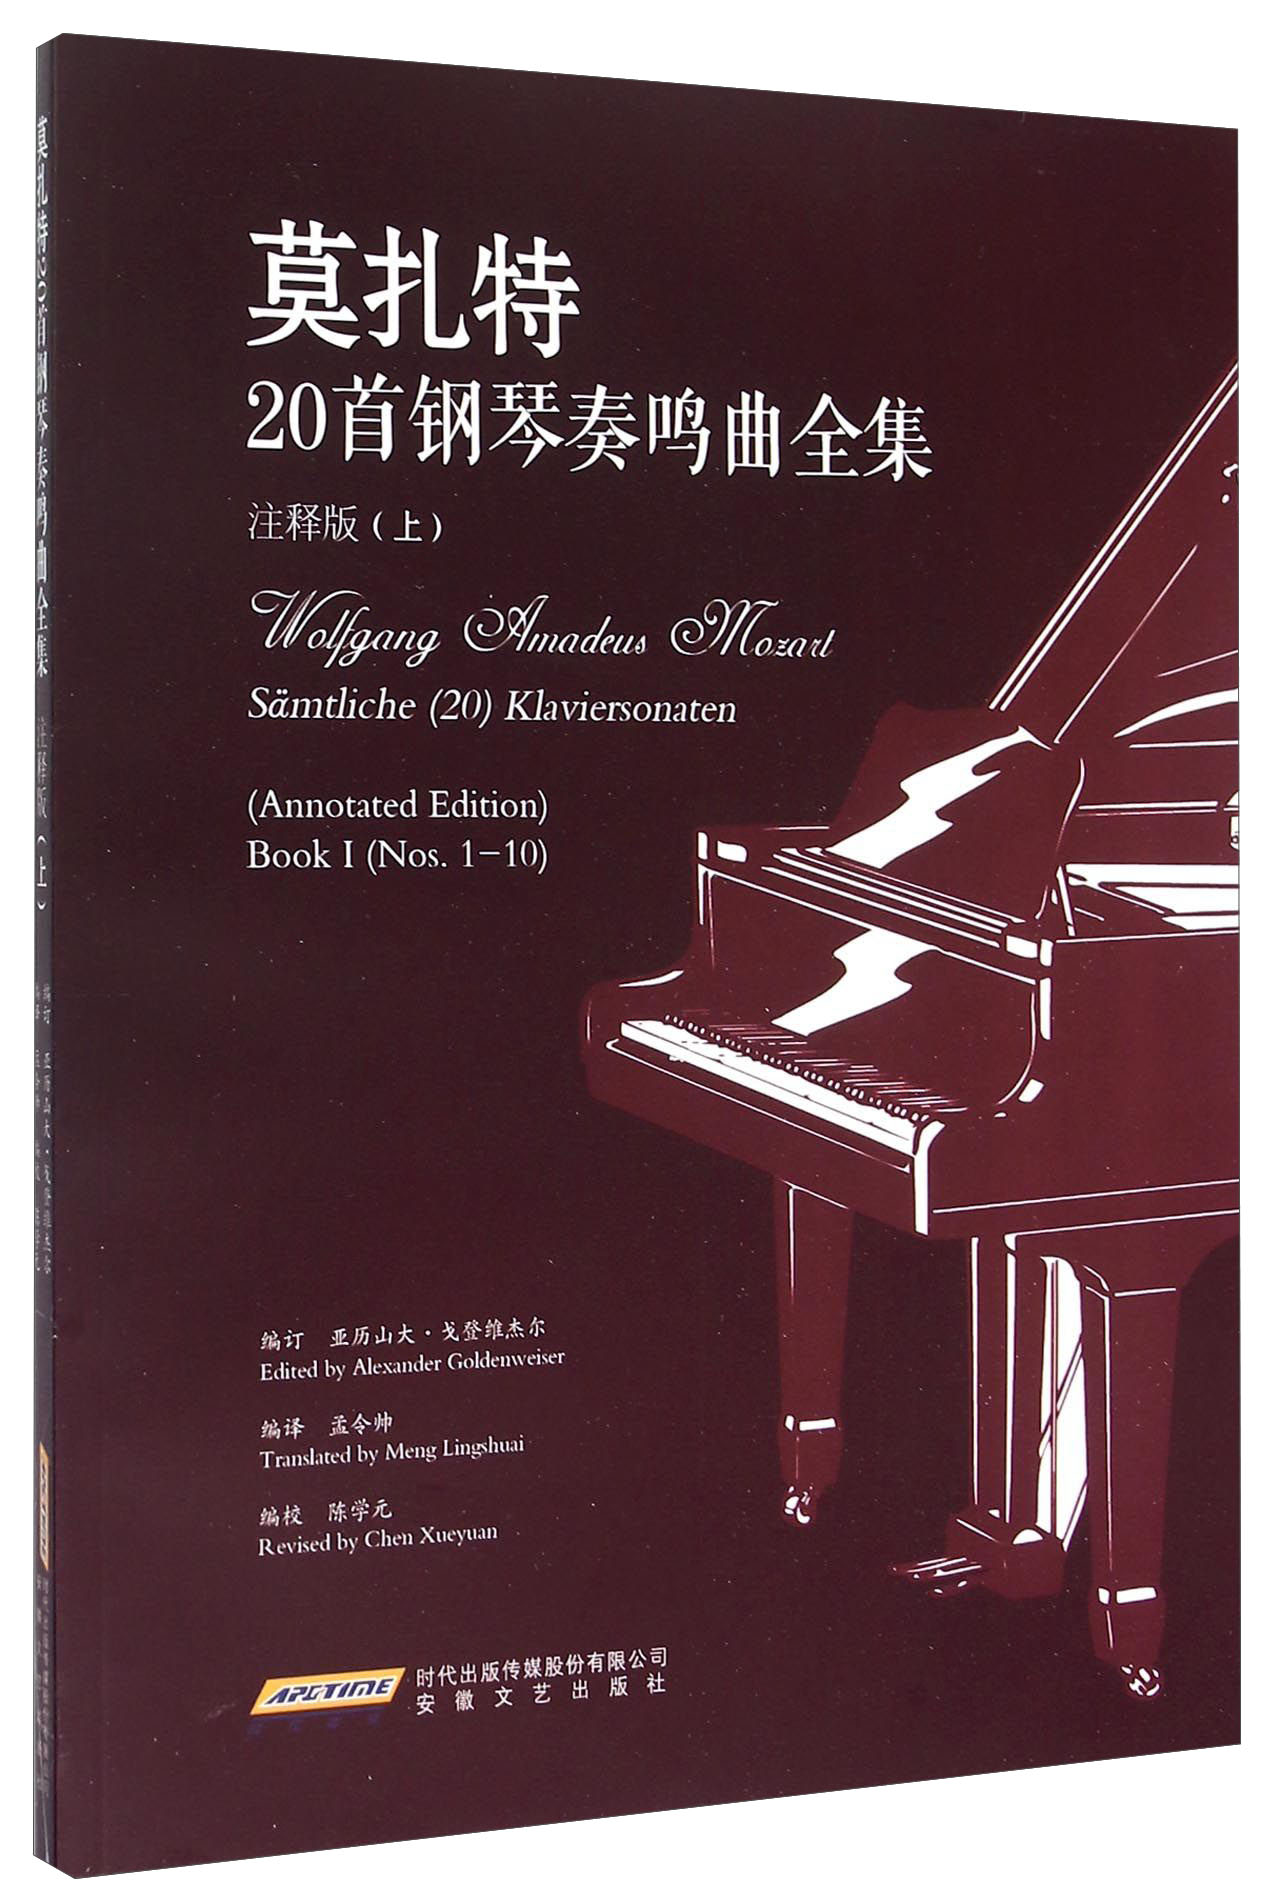 莫扎特20首钢琴奏鸣曲全集（注释版 上） mobi格式下载